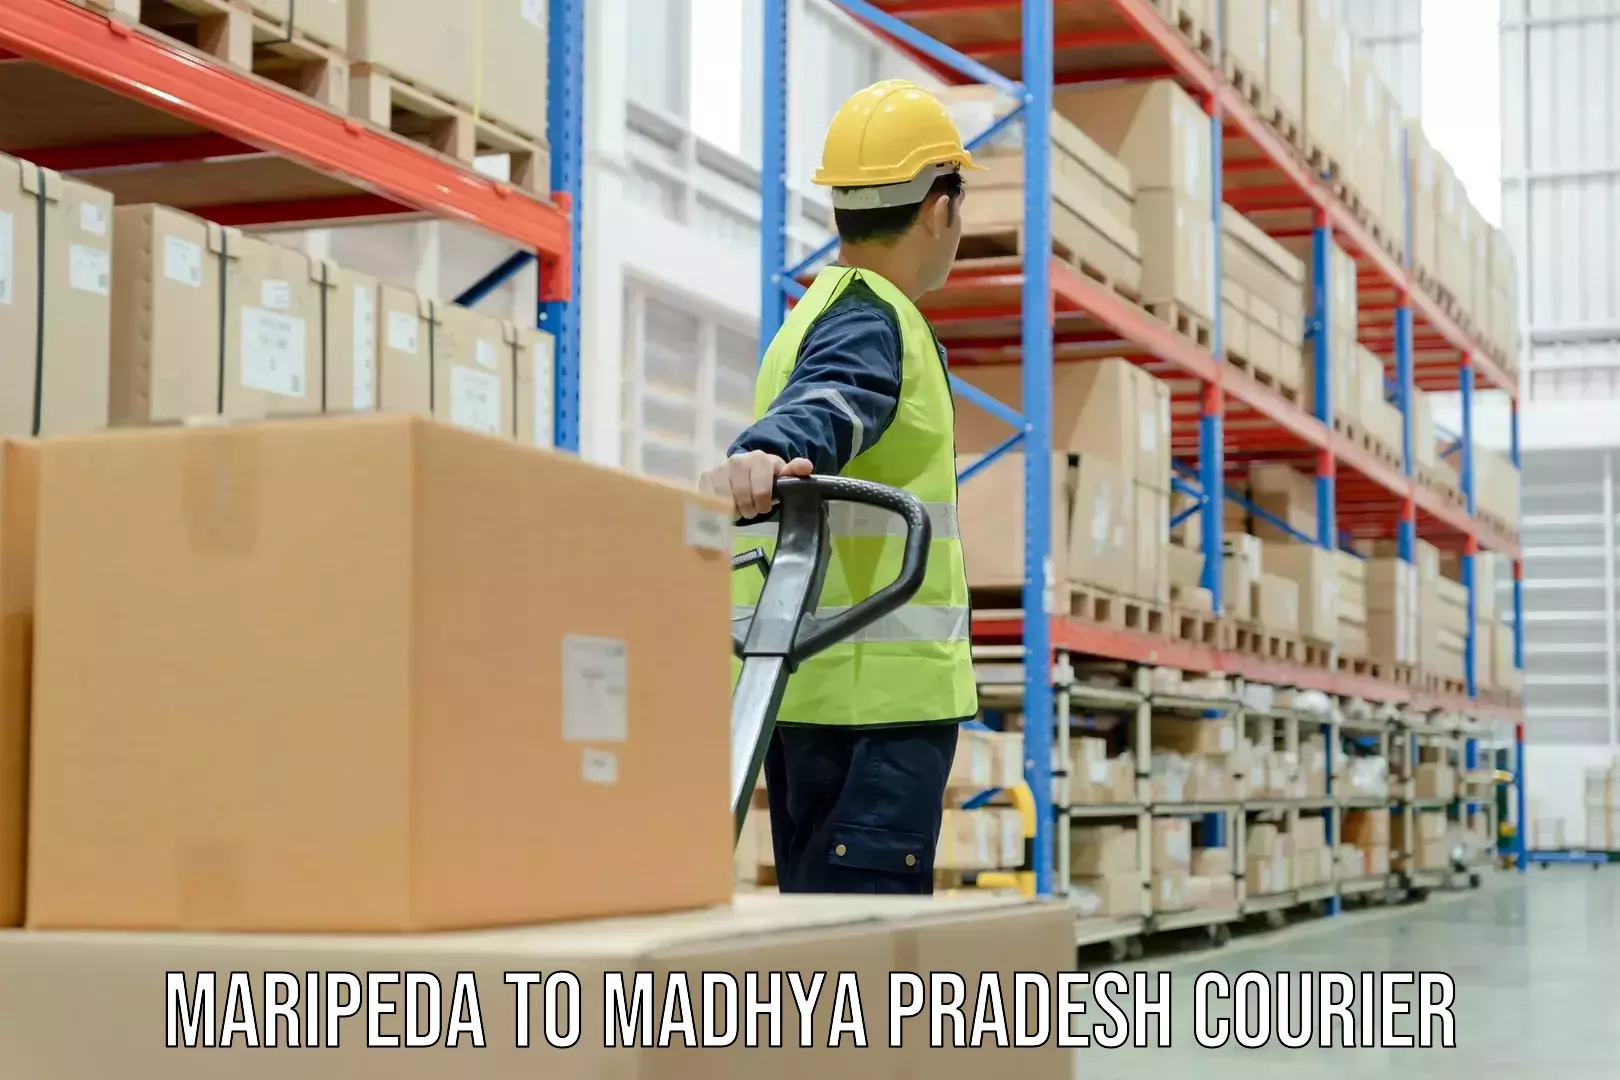 Door-to-door freight service Maripeda to IIIT Bhopal